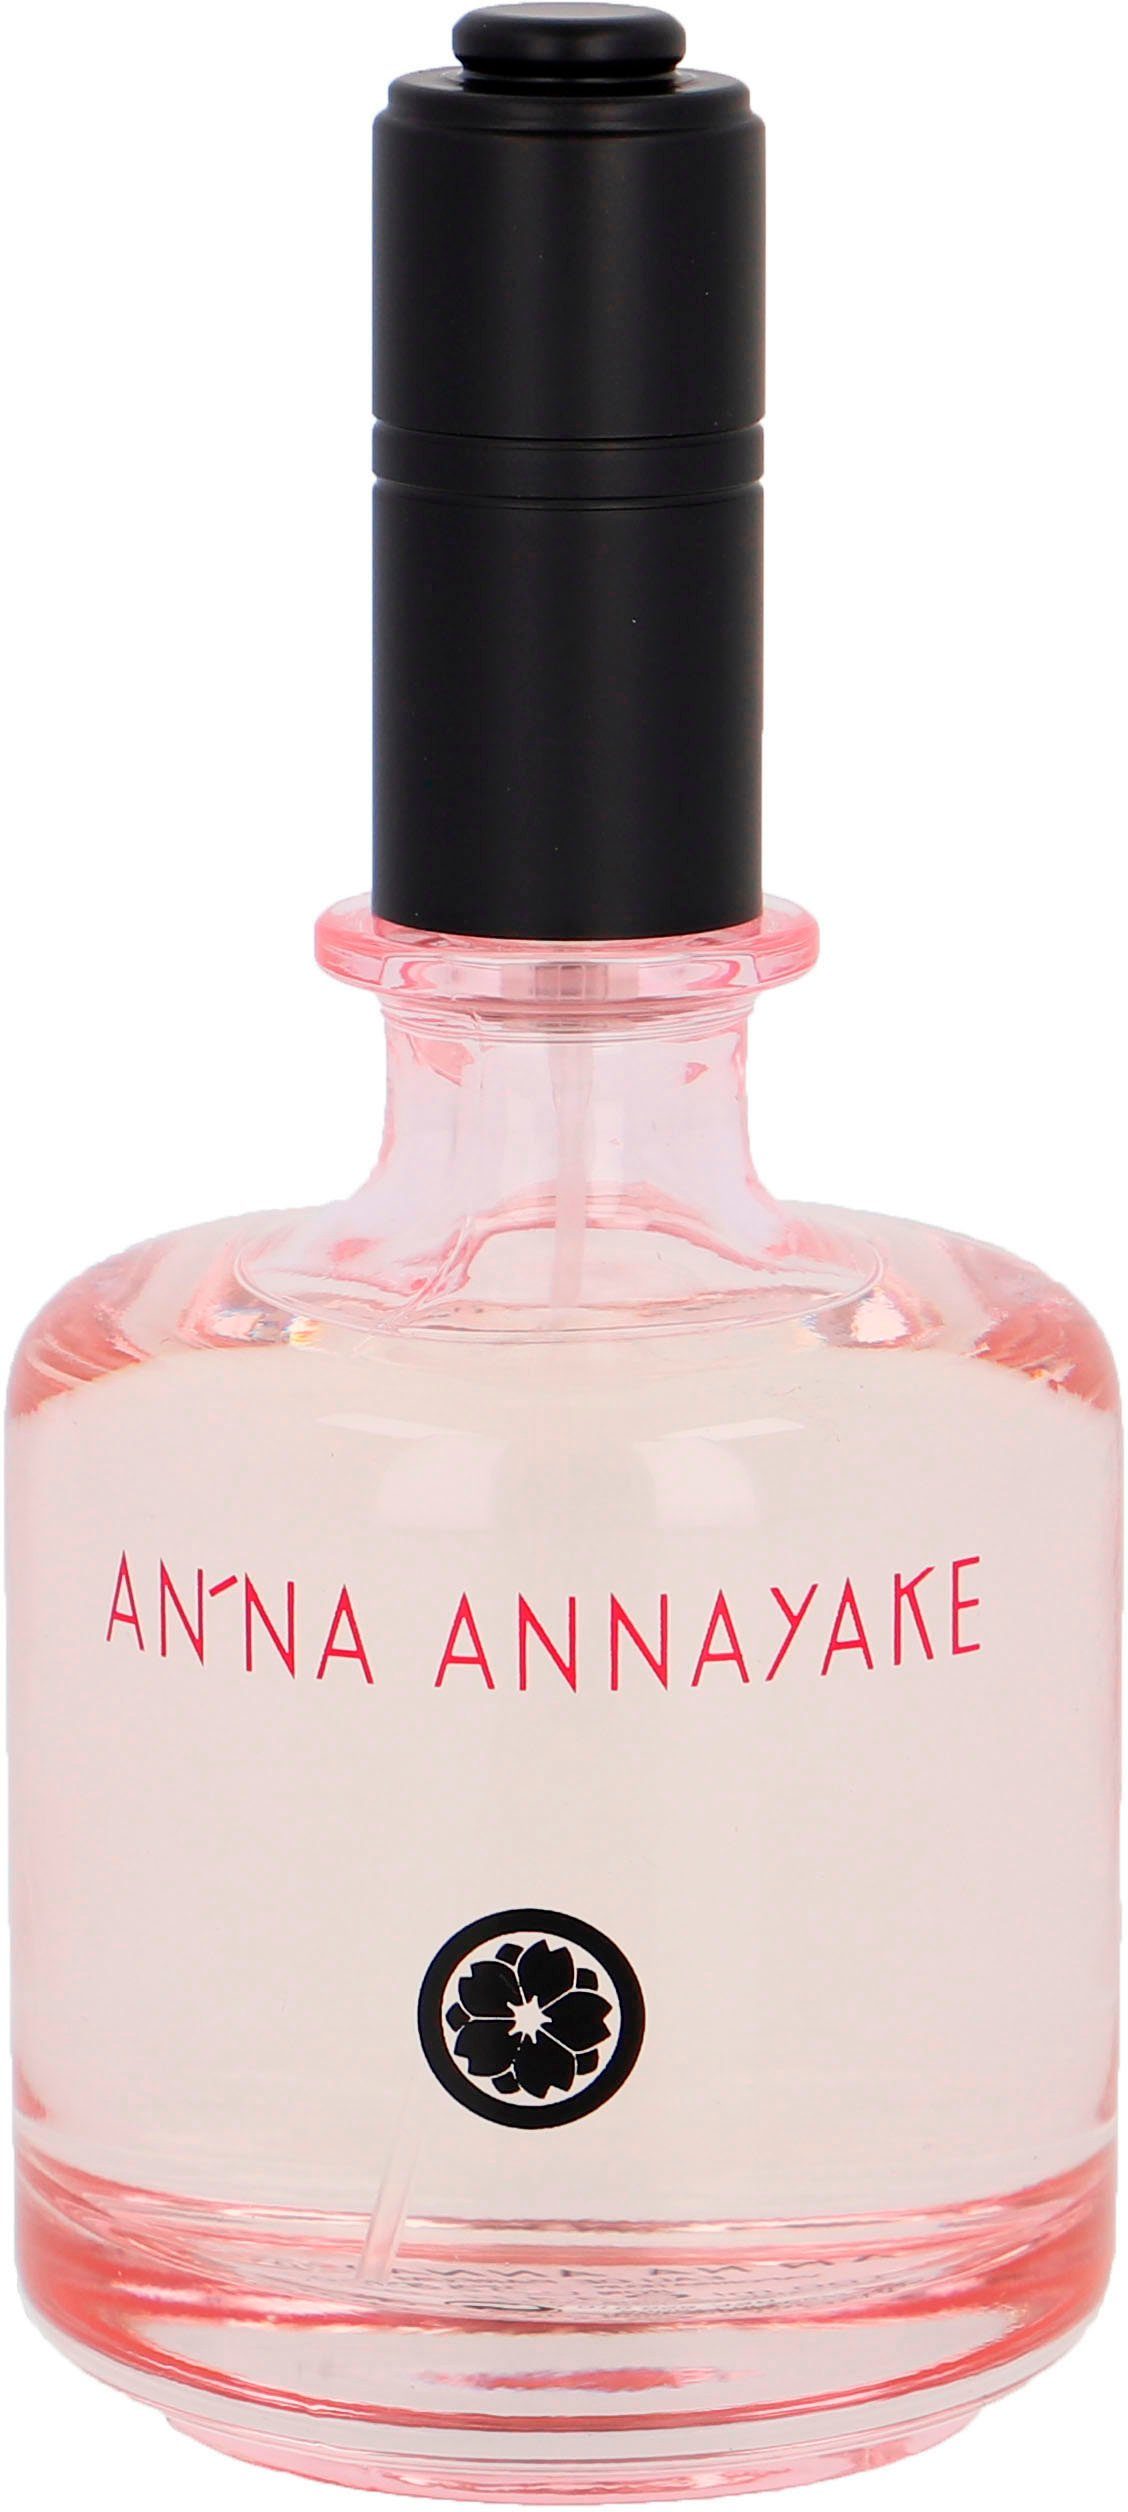 ANNAYAKE Eau de Parfum An'na Annayake